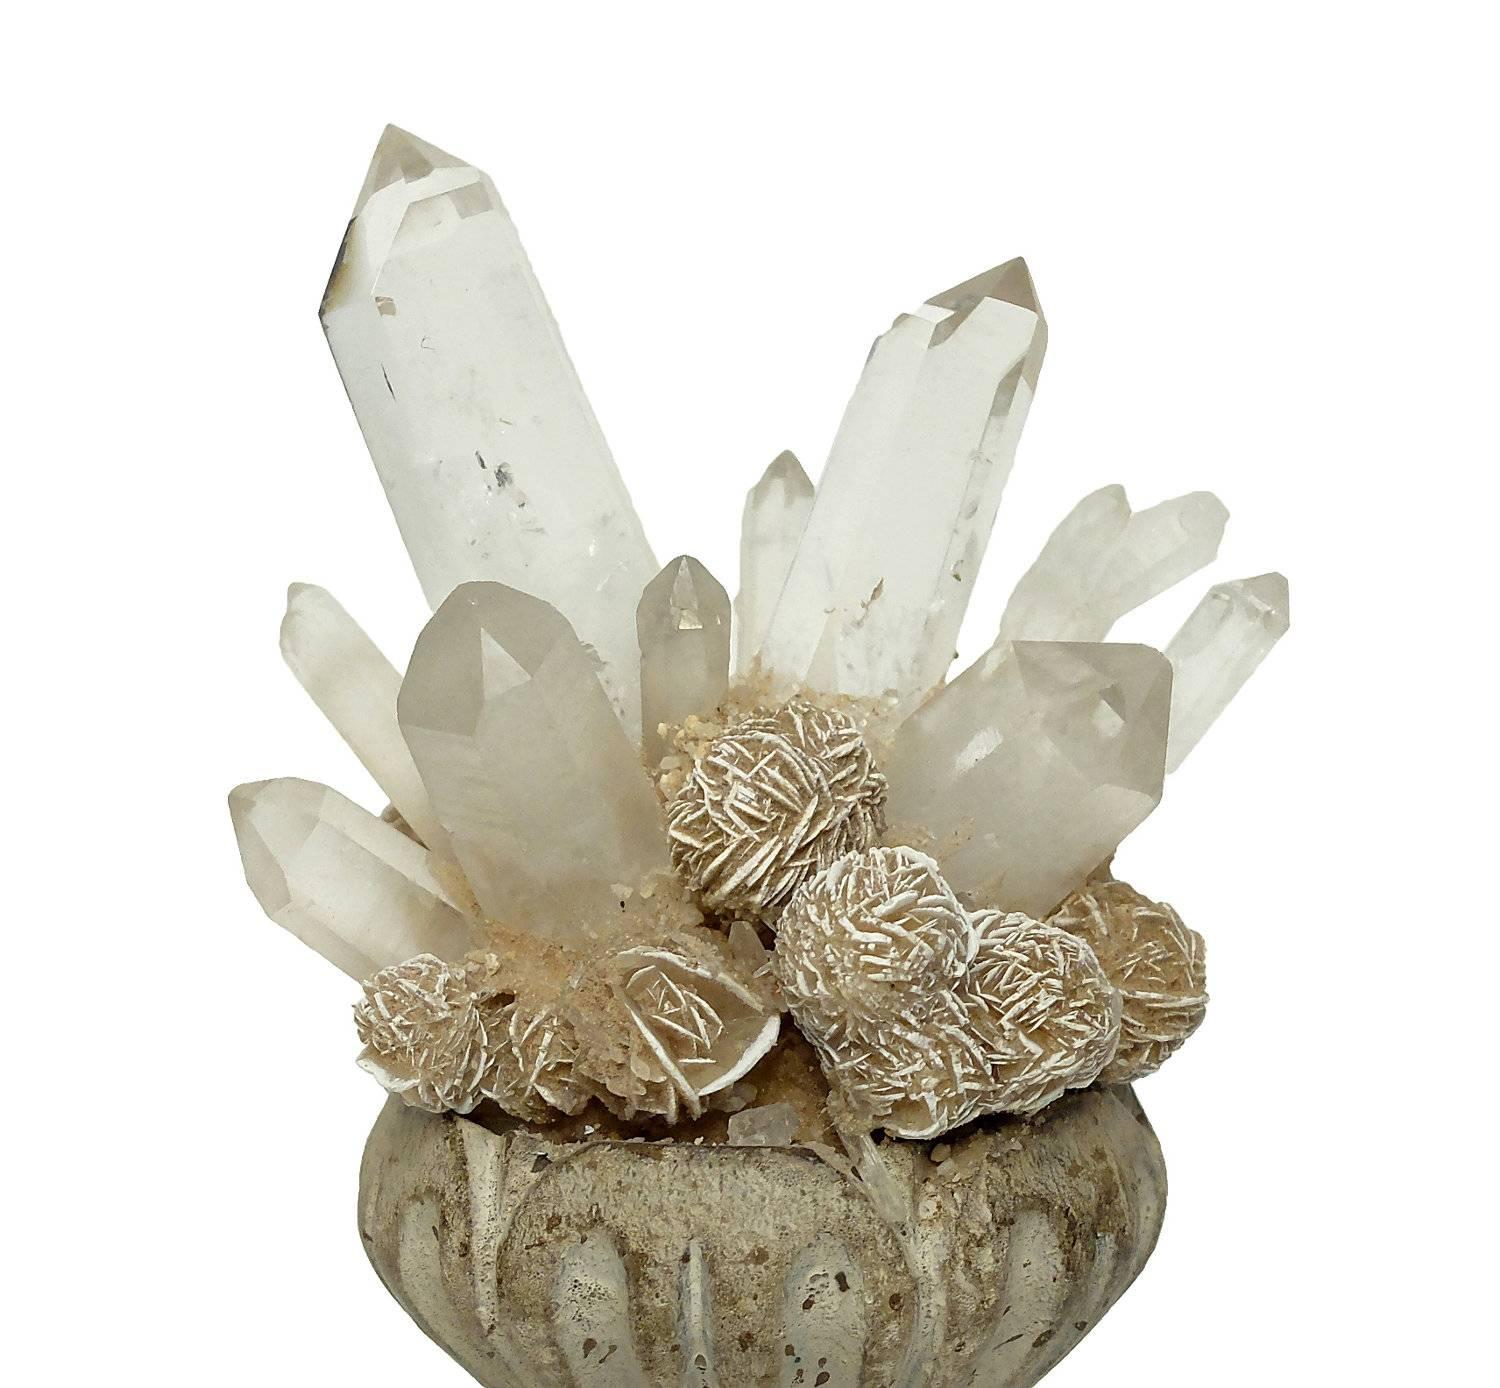 Italian Wunderkammer Naturalia Mineral Specimen, Desert Rose and Rock Crystal